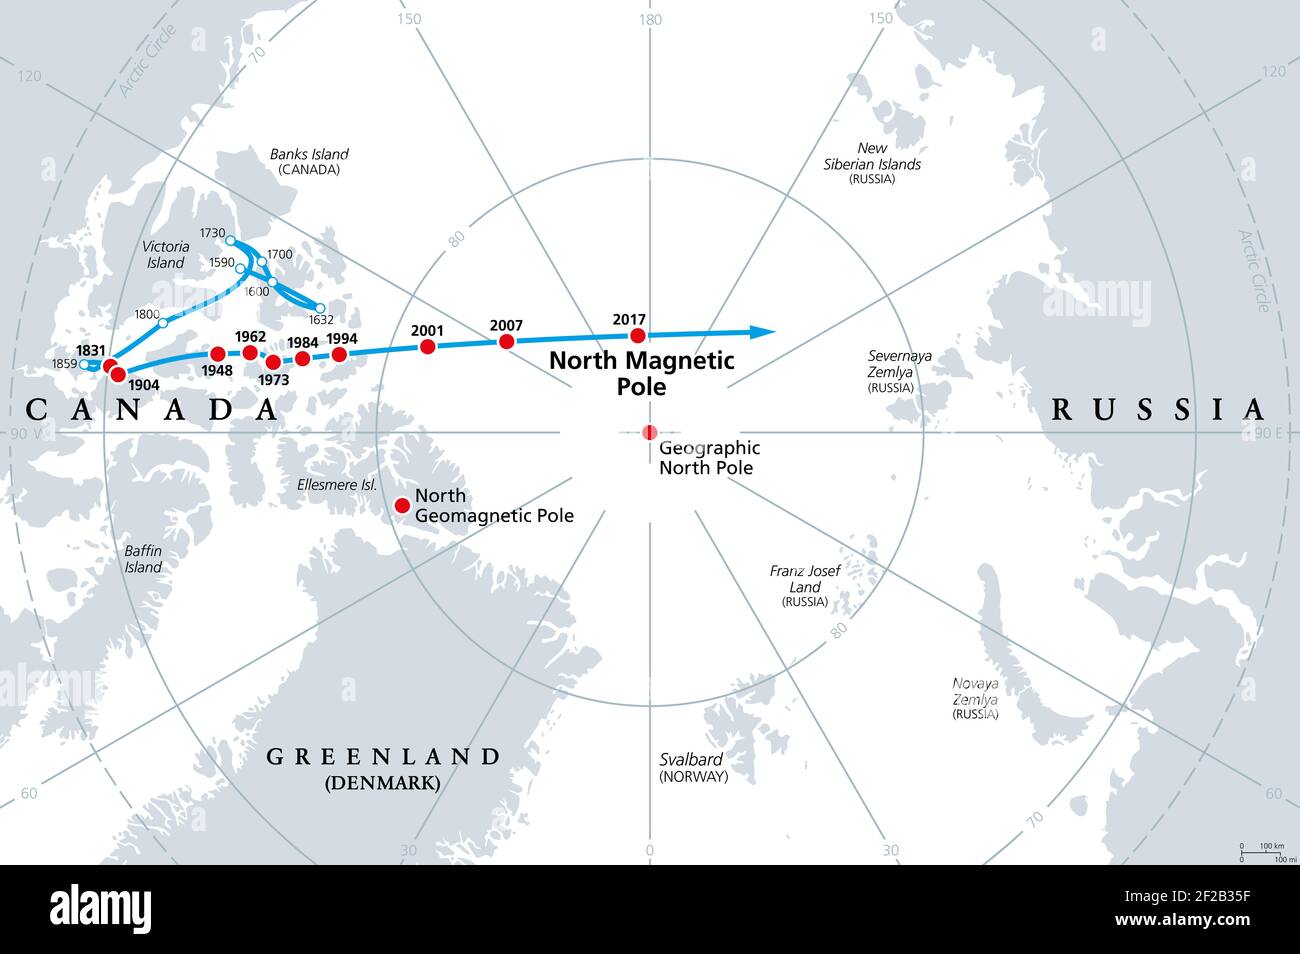 Bewegung des Nordpols, graue politische Karte. Magnetischer Nordpol der Erde, beobachtet seit 1831. Der Pol driftet nach Sibirien. Stockfoto